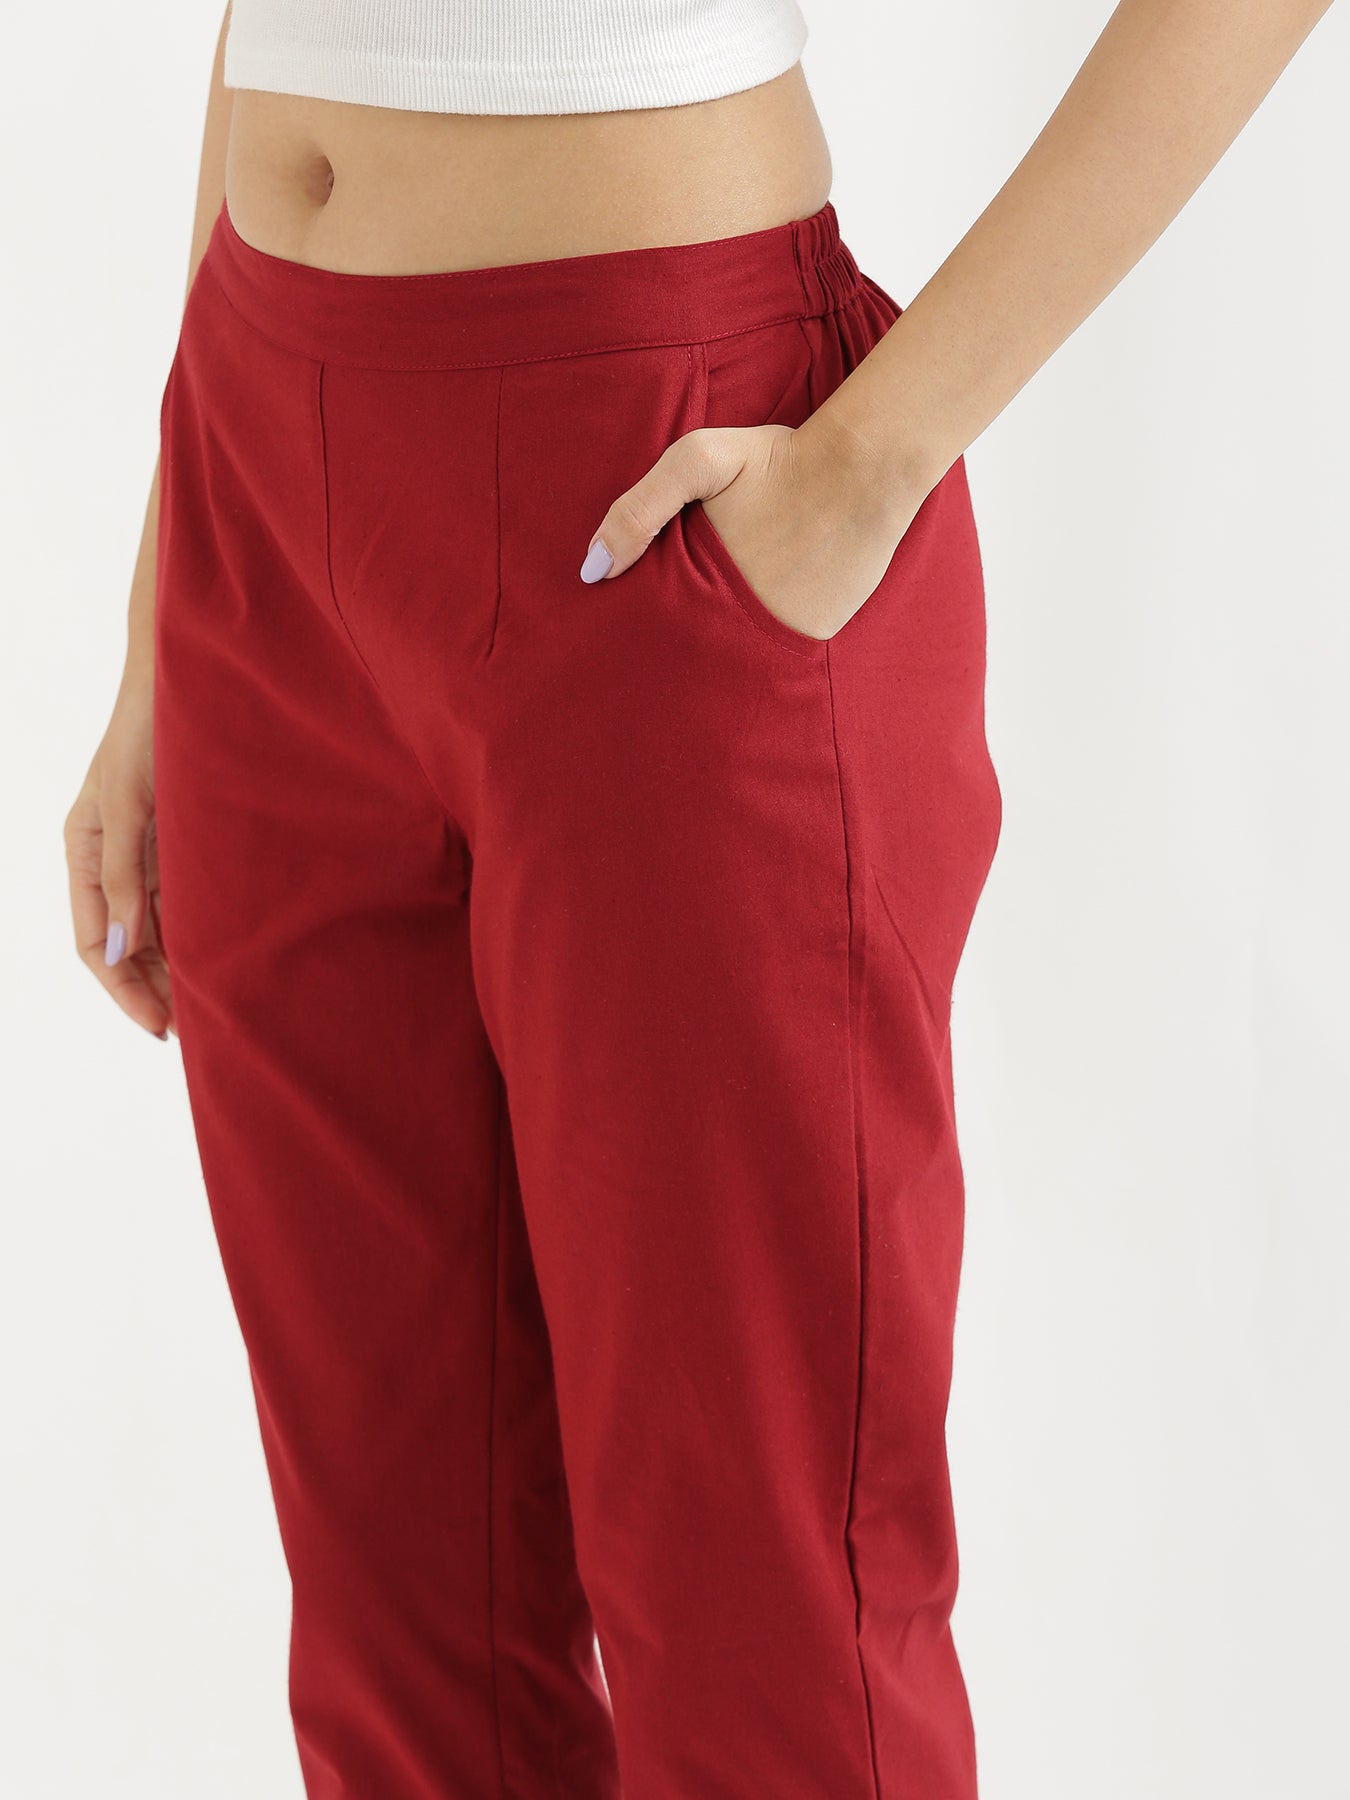 zara dress pants size guide｜TikTok Search